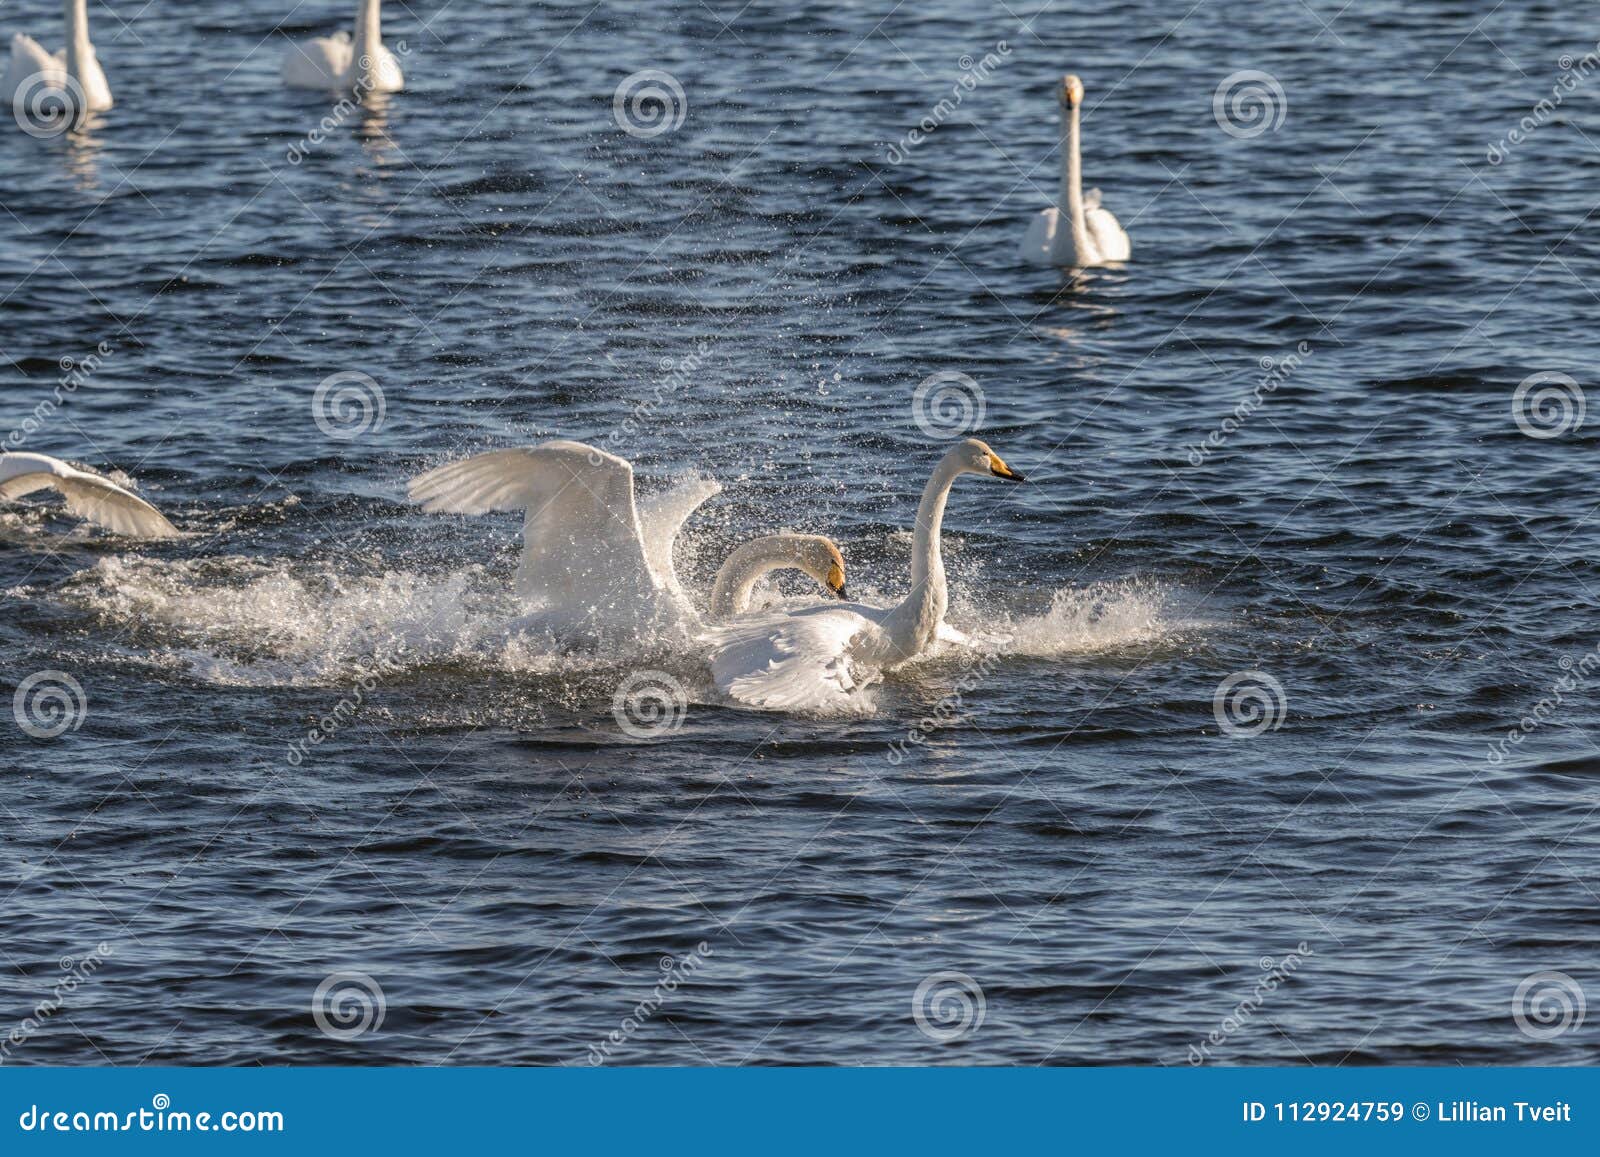 whooper swans, cygnus cygnus, fighting in the hananger water at lista, norway